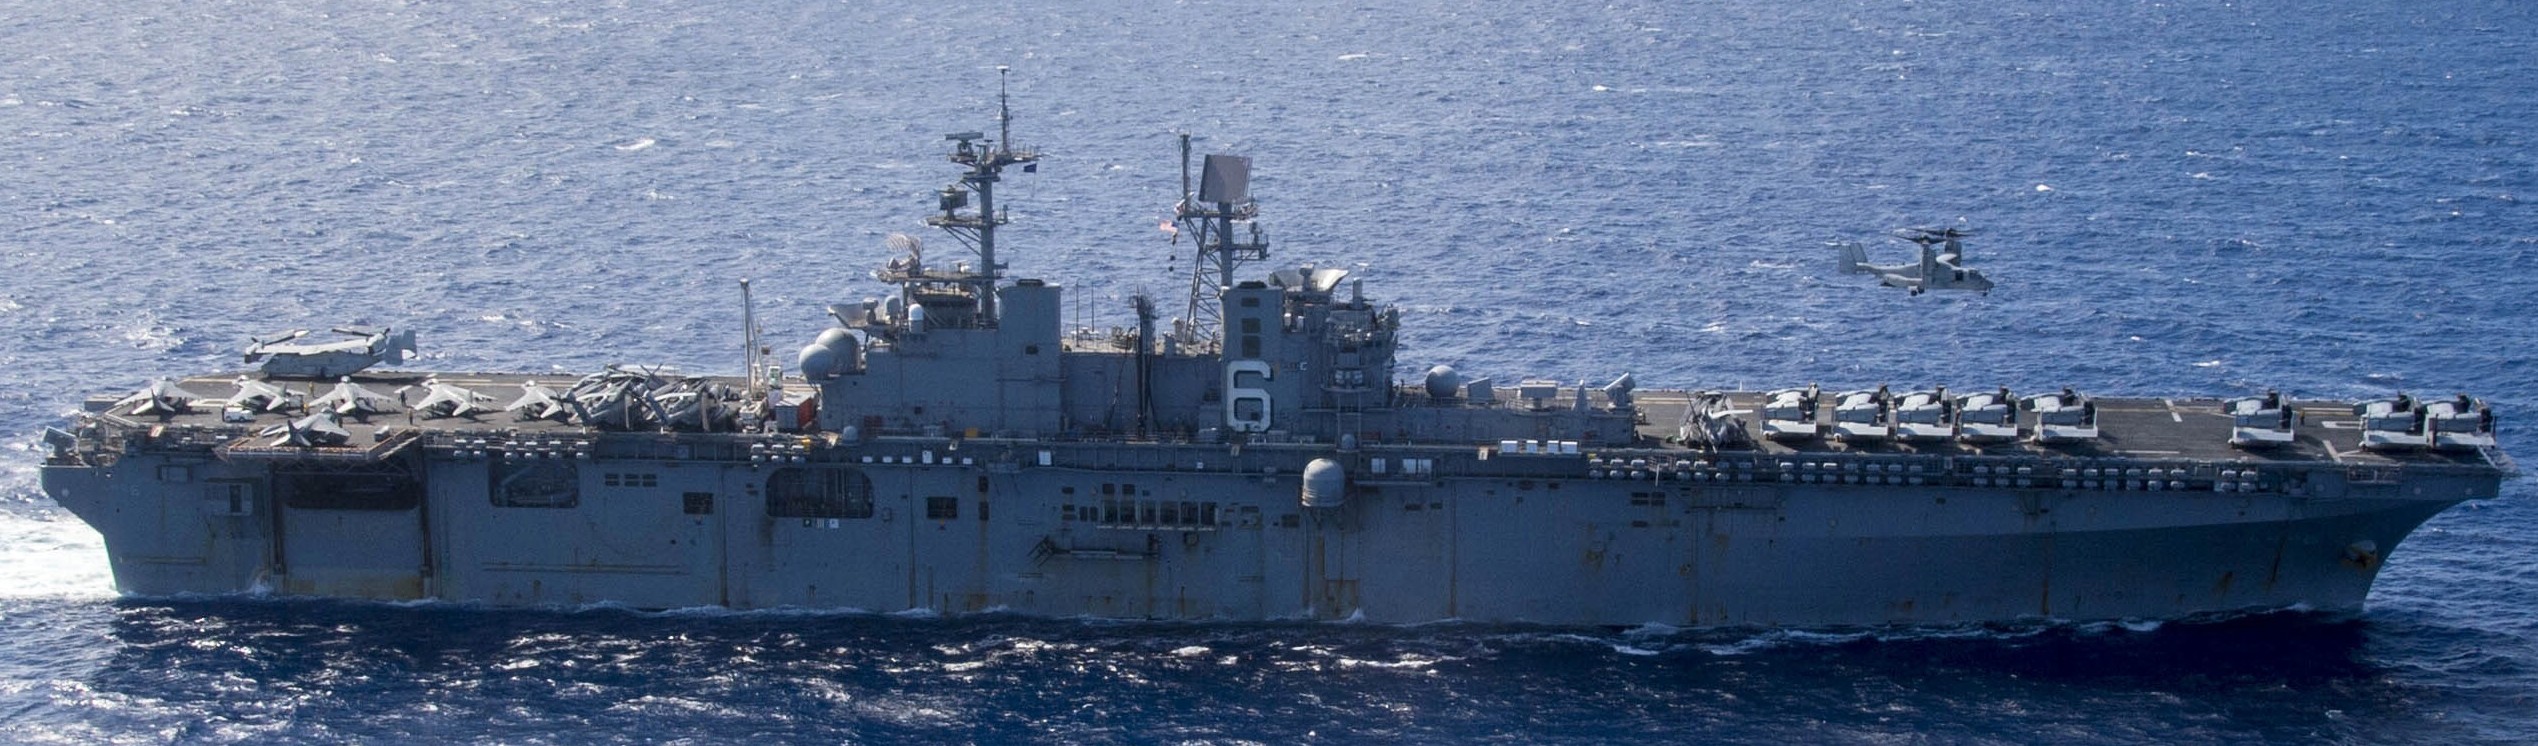 lhd-6 uss bonhomme richard amphibious assault ship landing helicopter dock wasp class 77